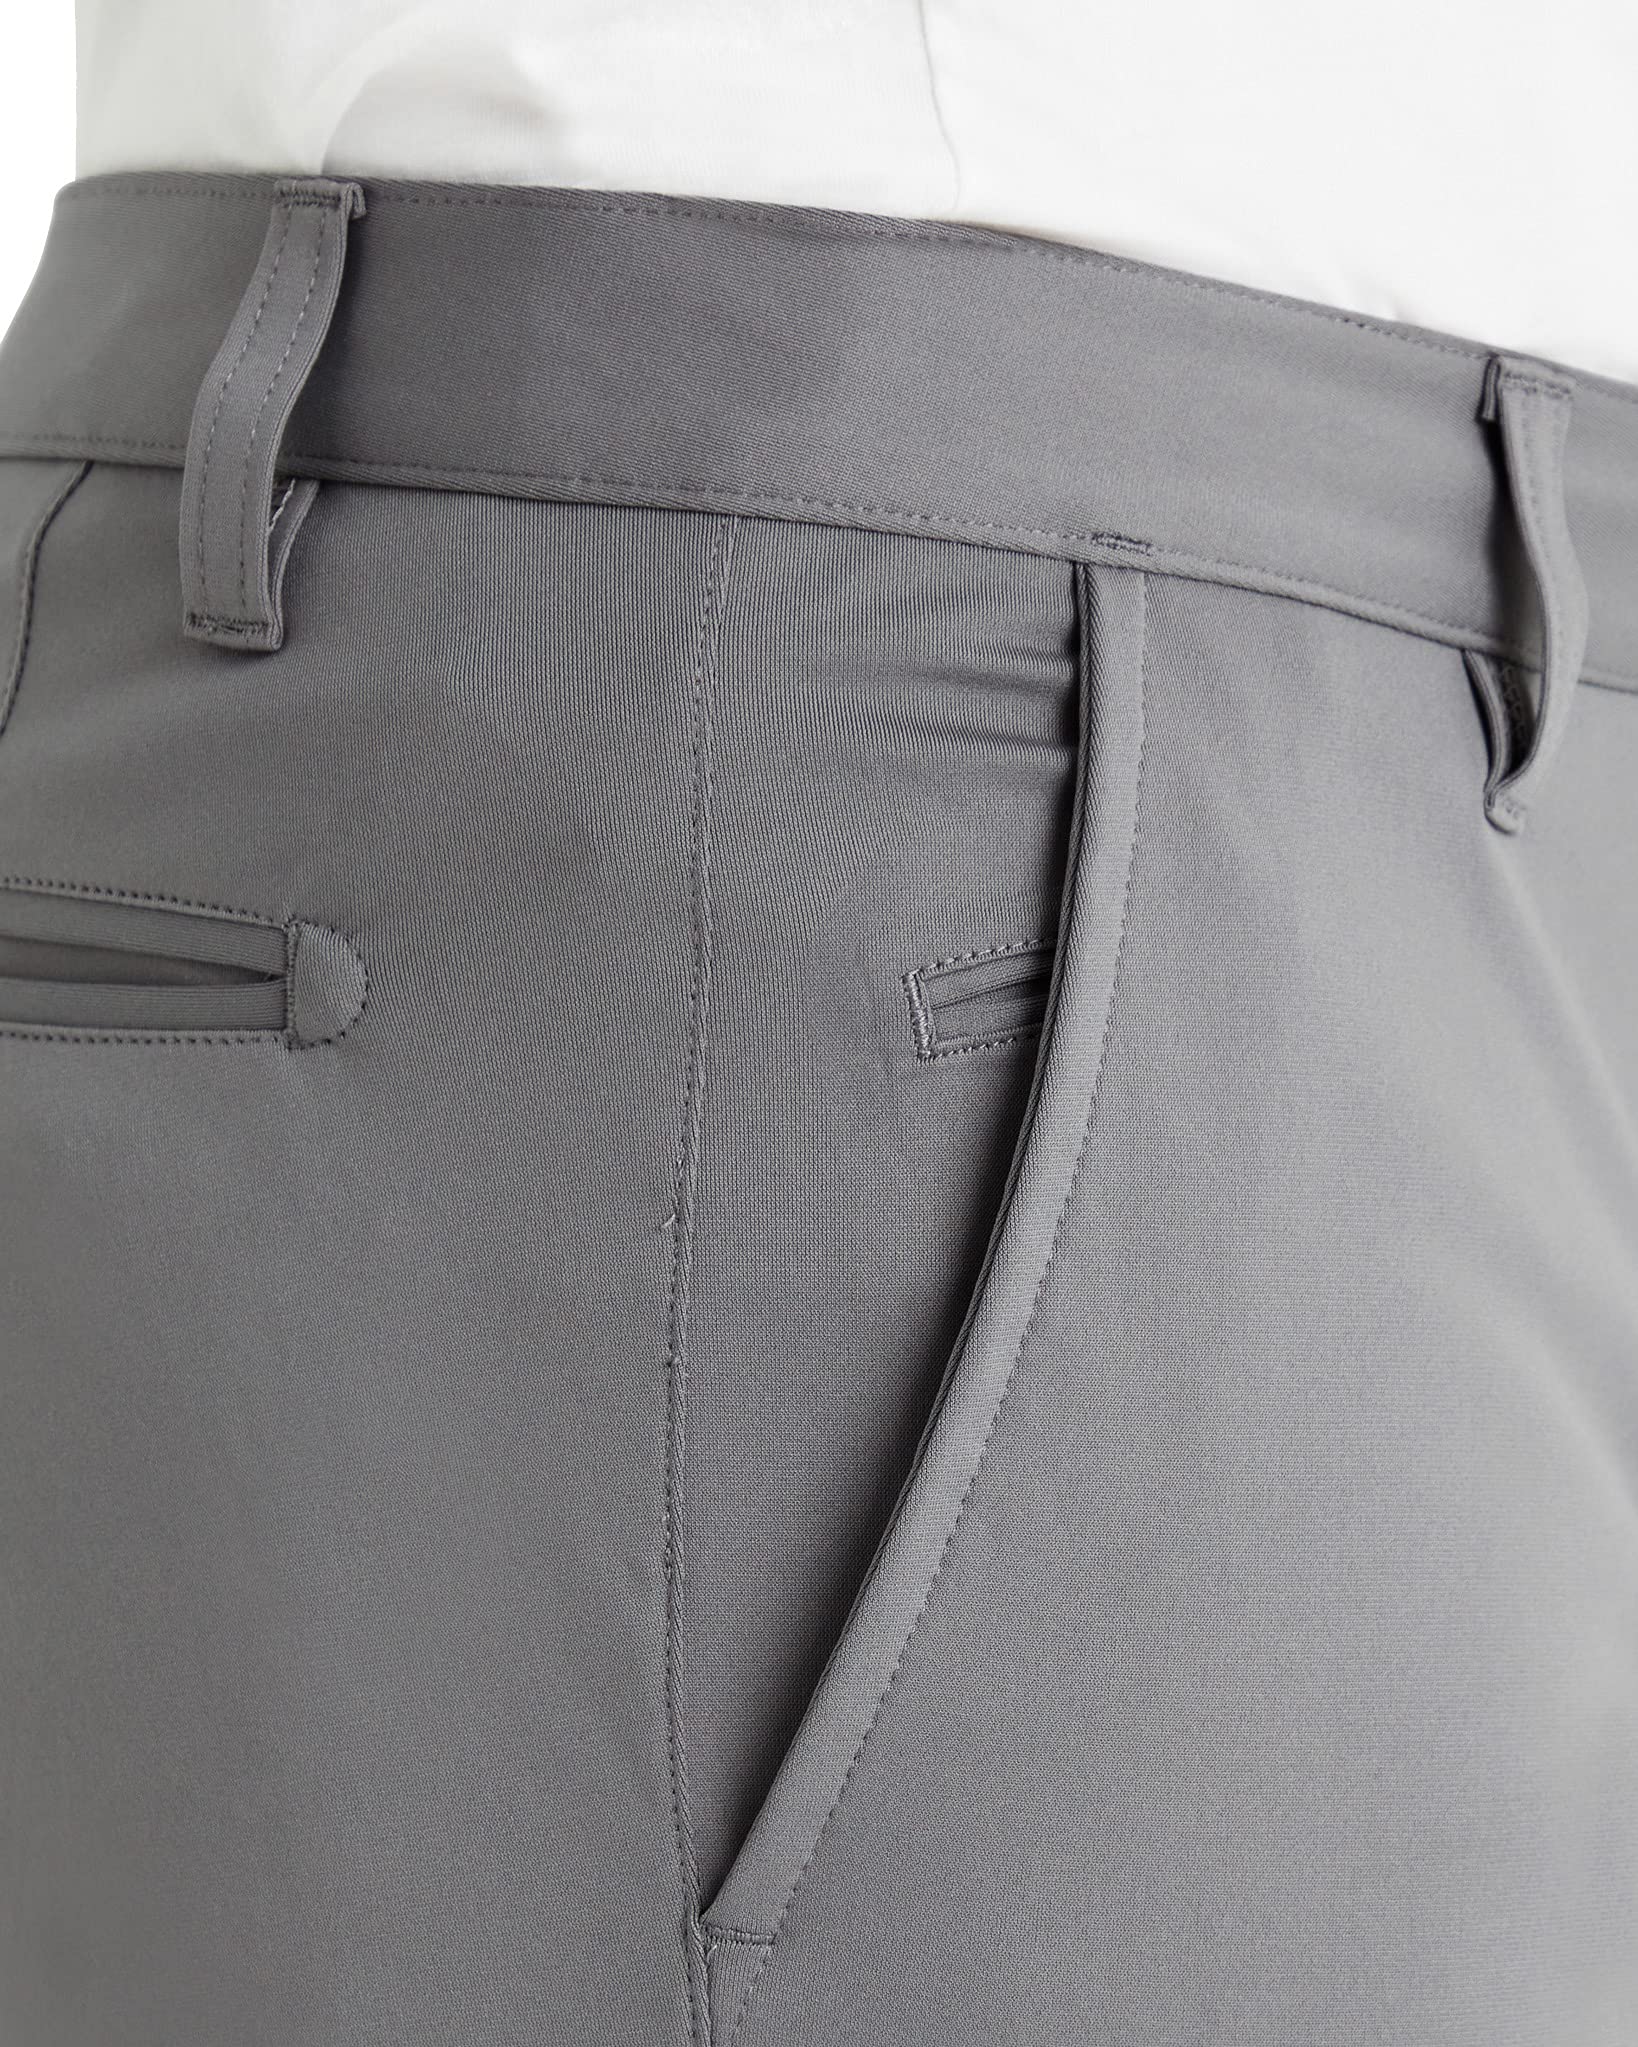 H&M | Pants | Hm Men Black Slim Fit Woolblend Suit Dress Pants | Poshmark